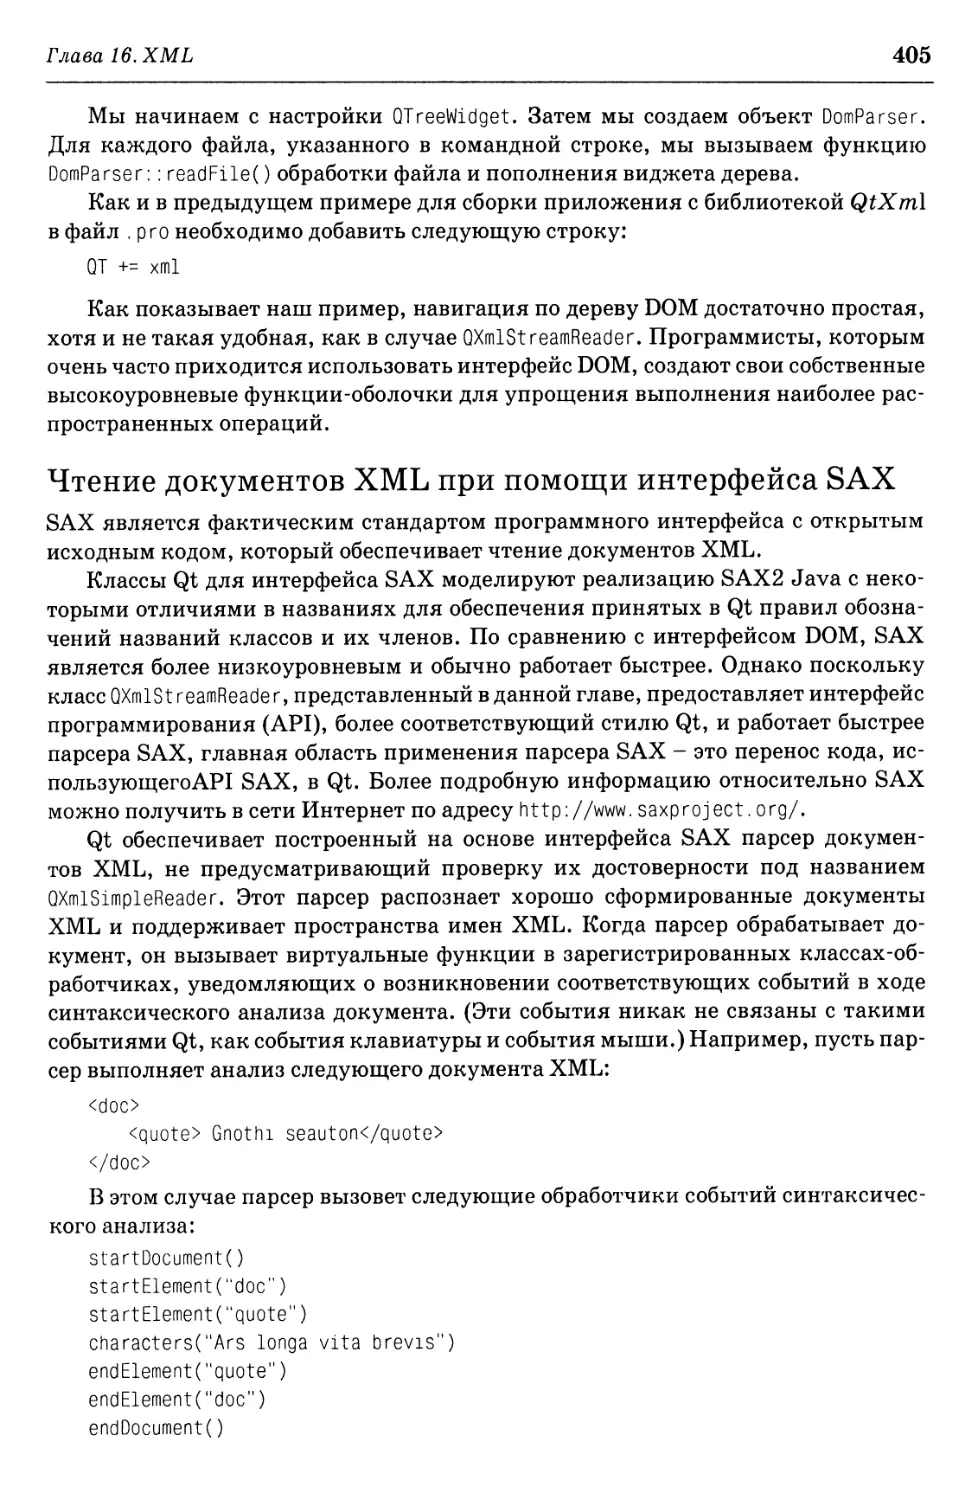 Чтение документов XML при помощи интерфейса SAX